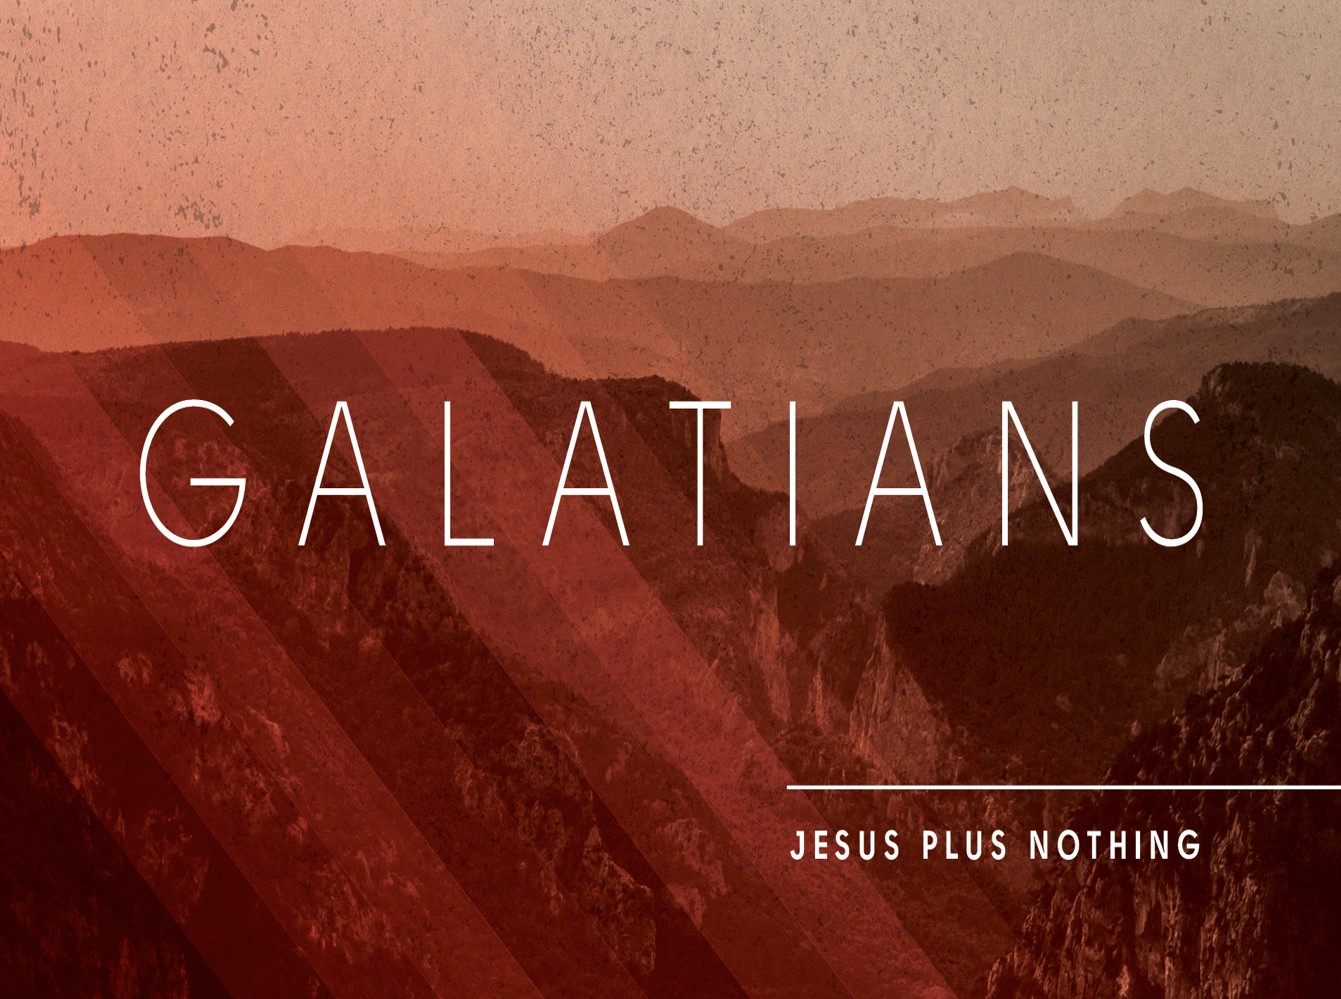 Galatians 2:15-21